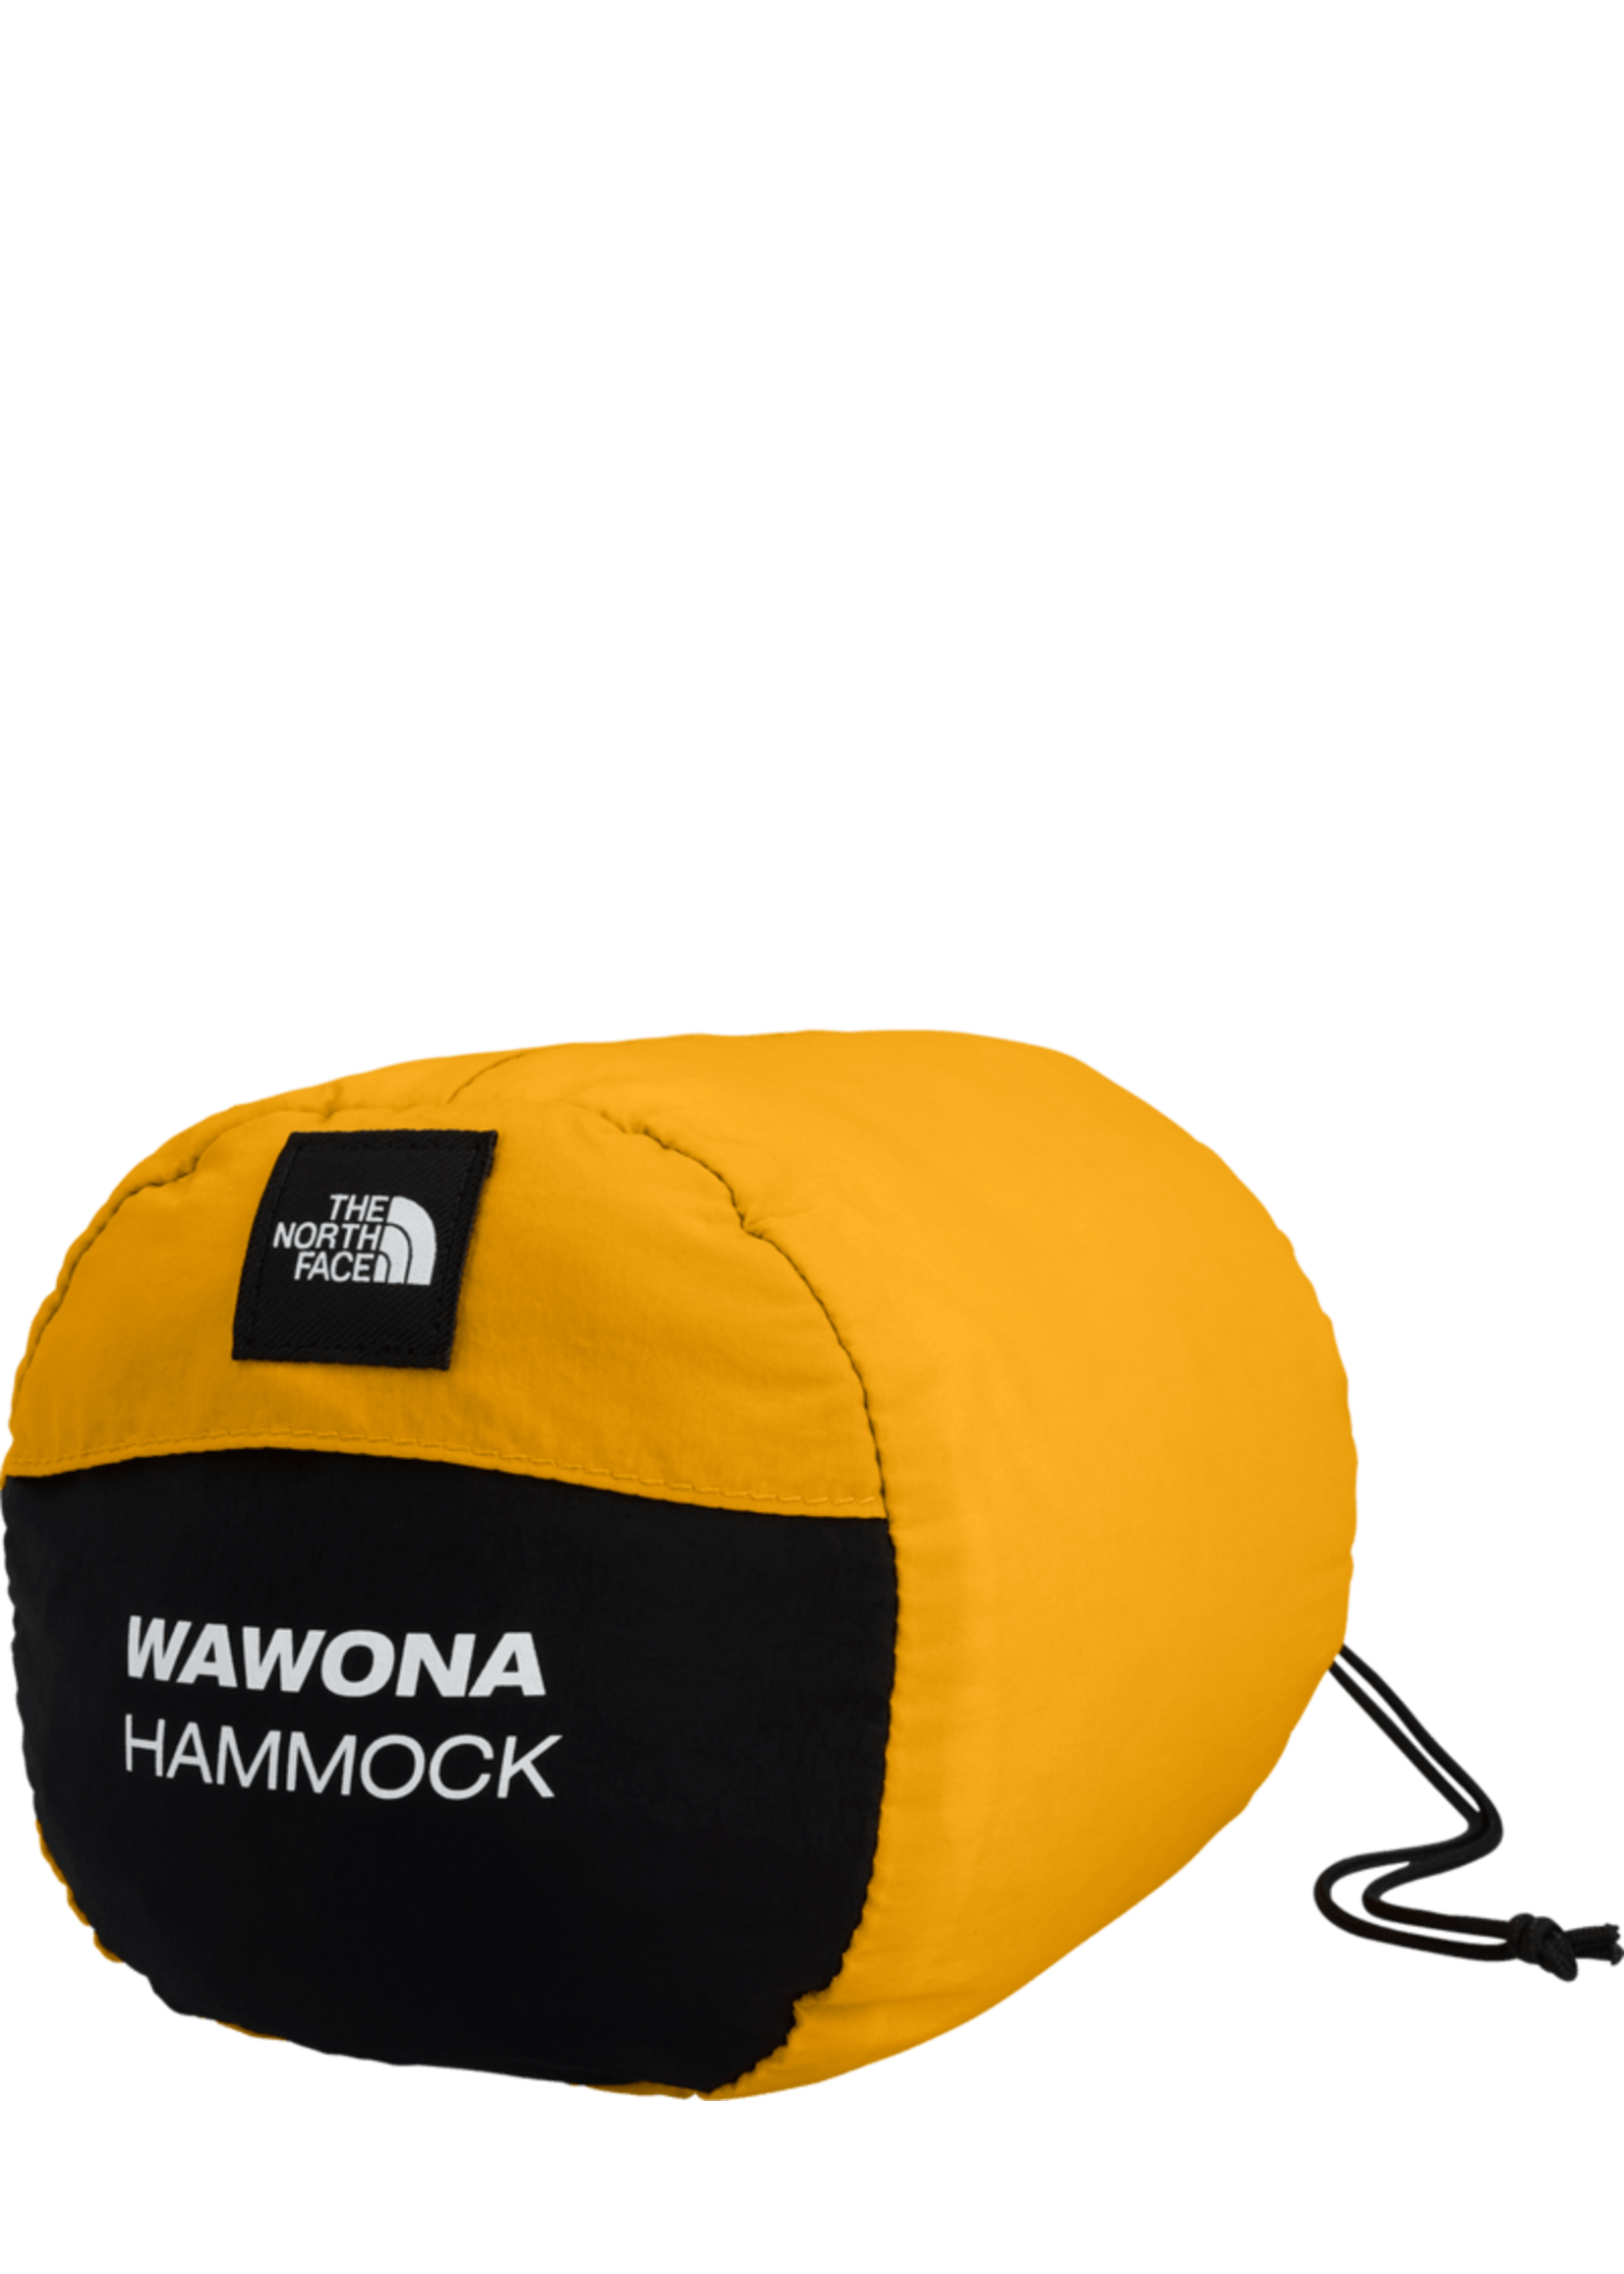 The North Face Wawona Camp Hammock - Summit Gold/Black